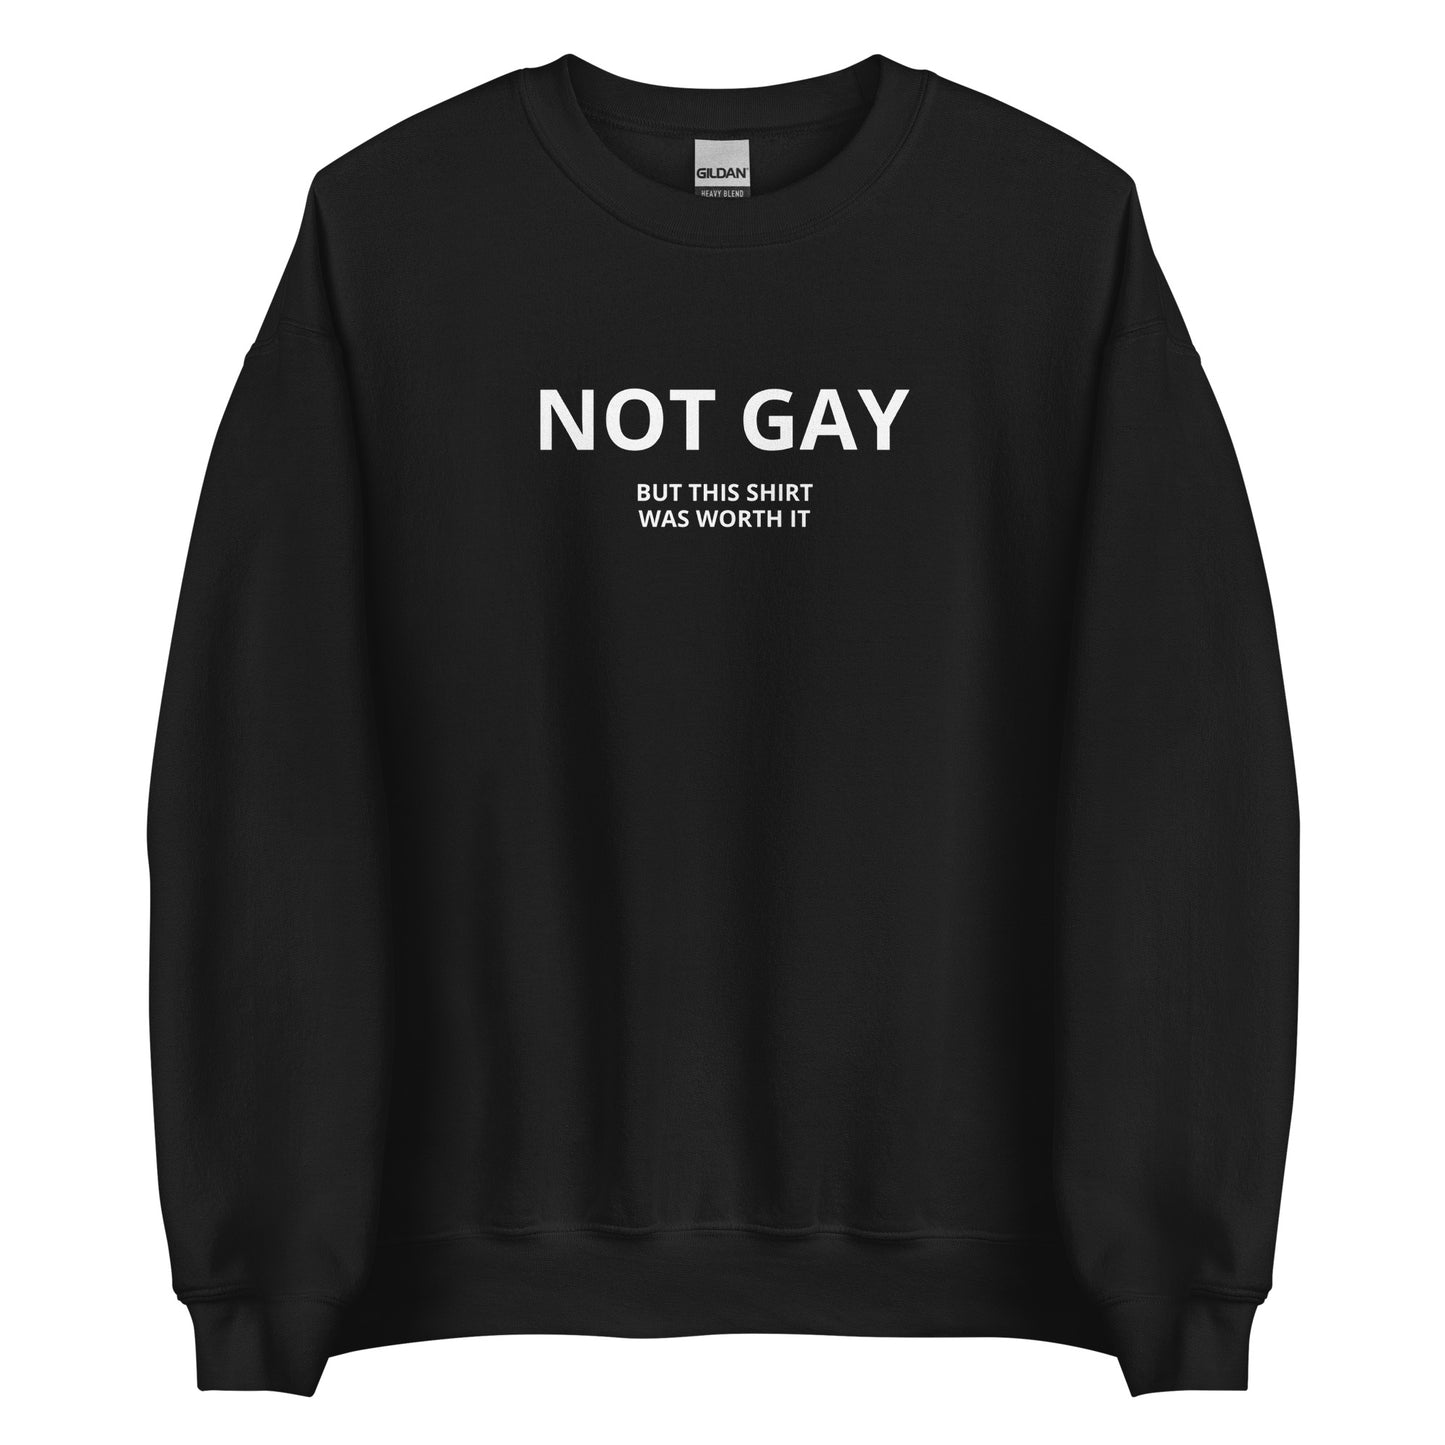 NOT GAY